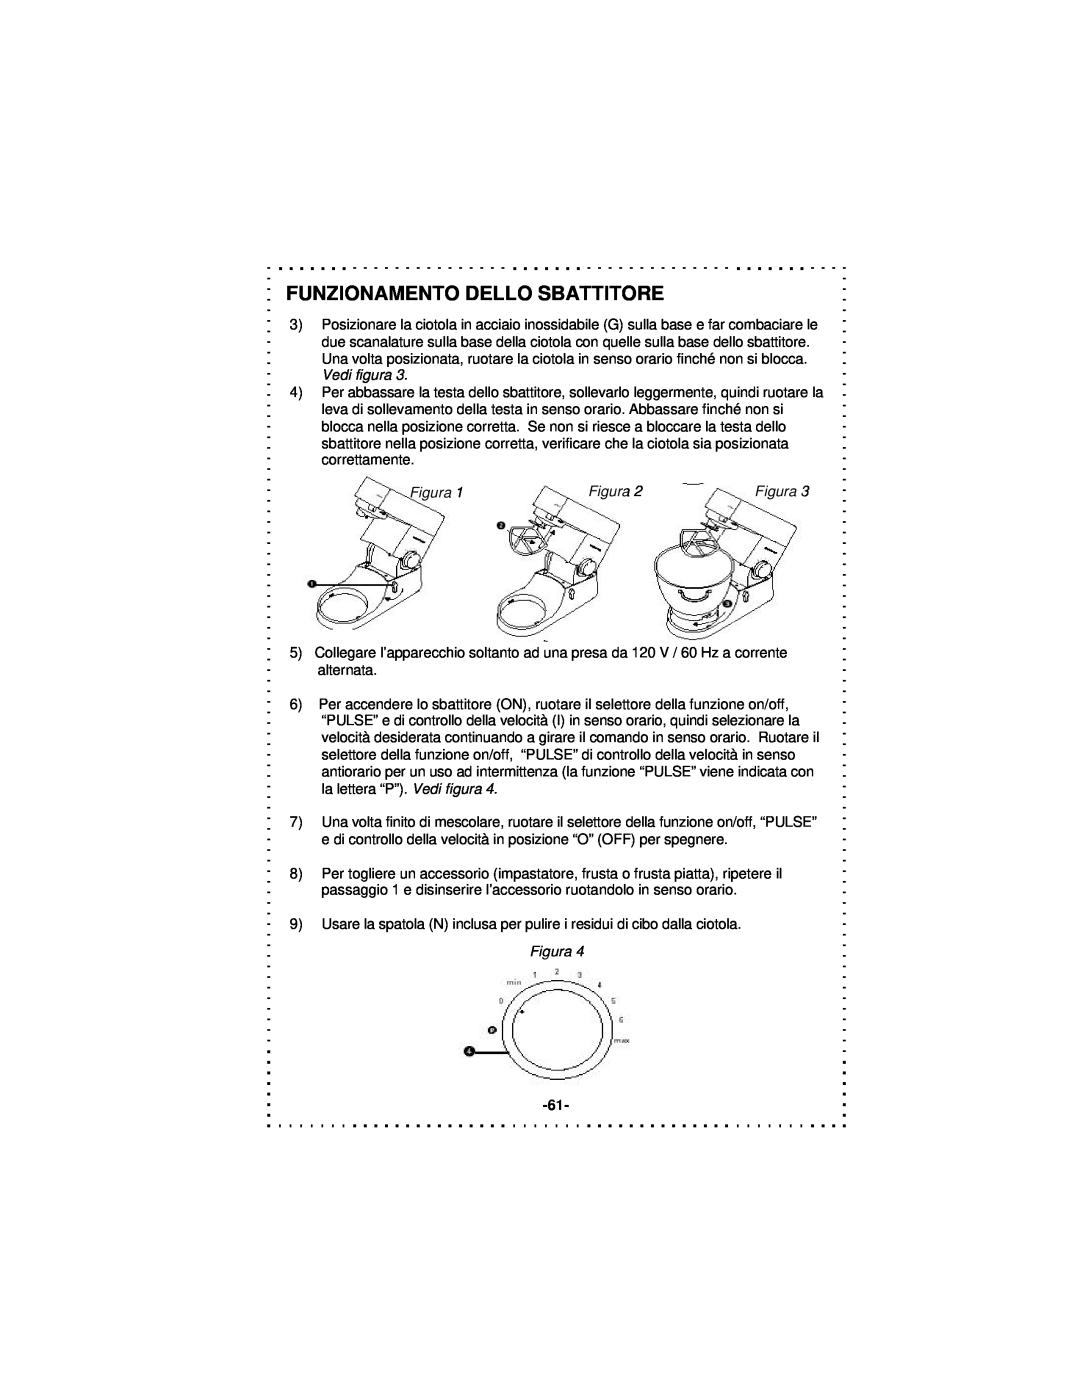 DeLonghi DSM5 - 7 Series instruction manual Funzionamento Dello Sbattitore, Figura 